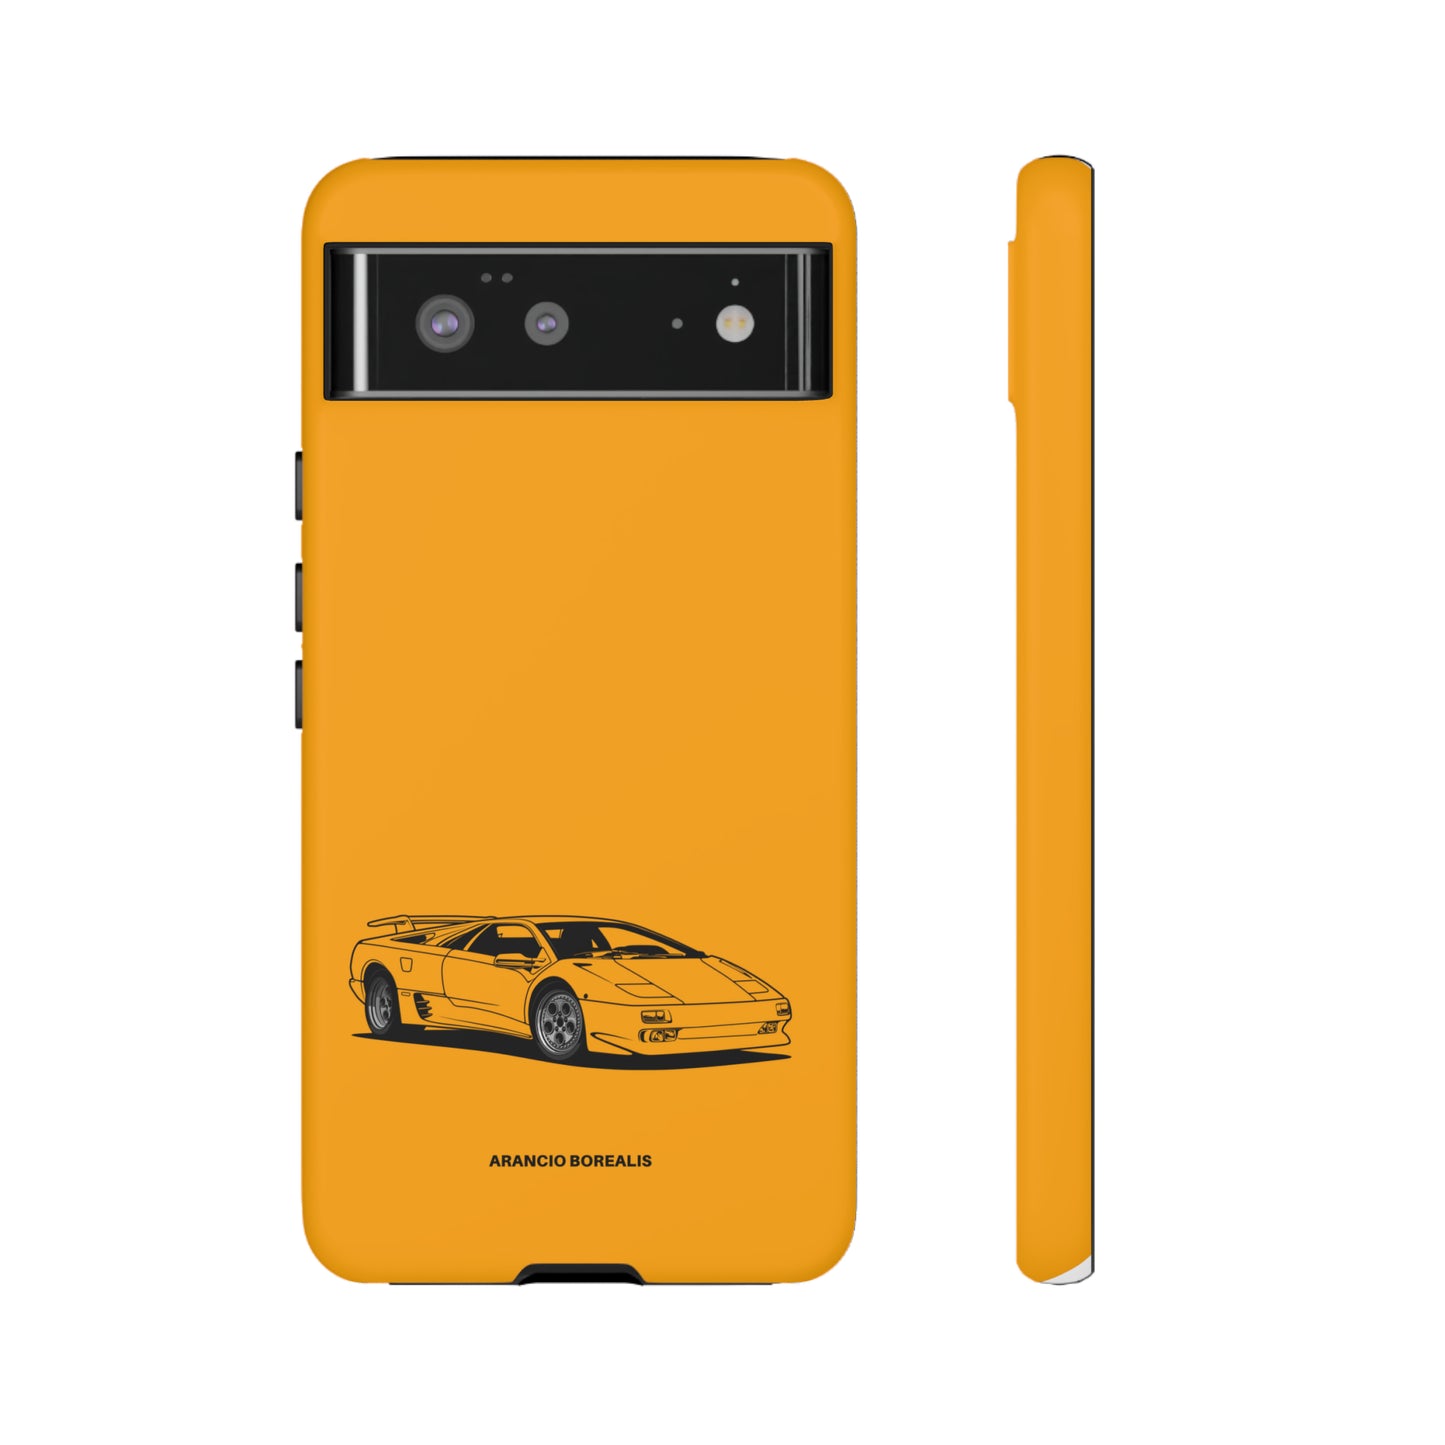 Arancio Borealis - Tough Case iPhone/Samsung/Pixel